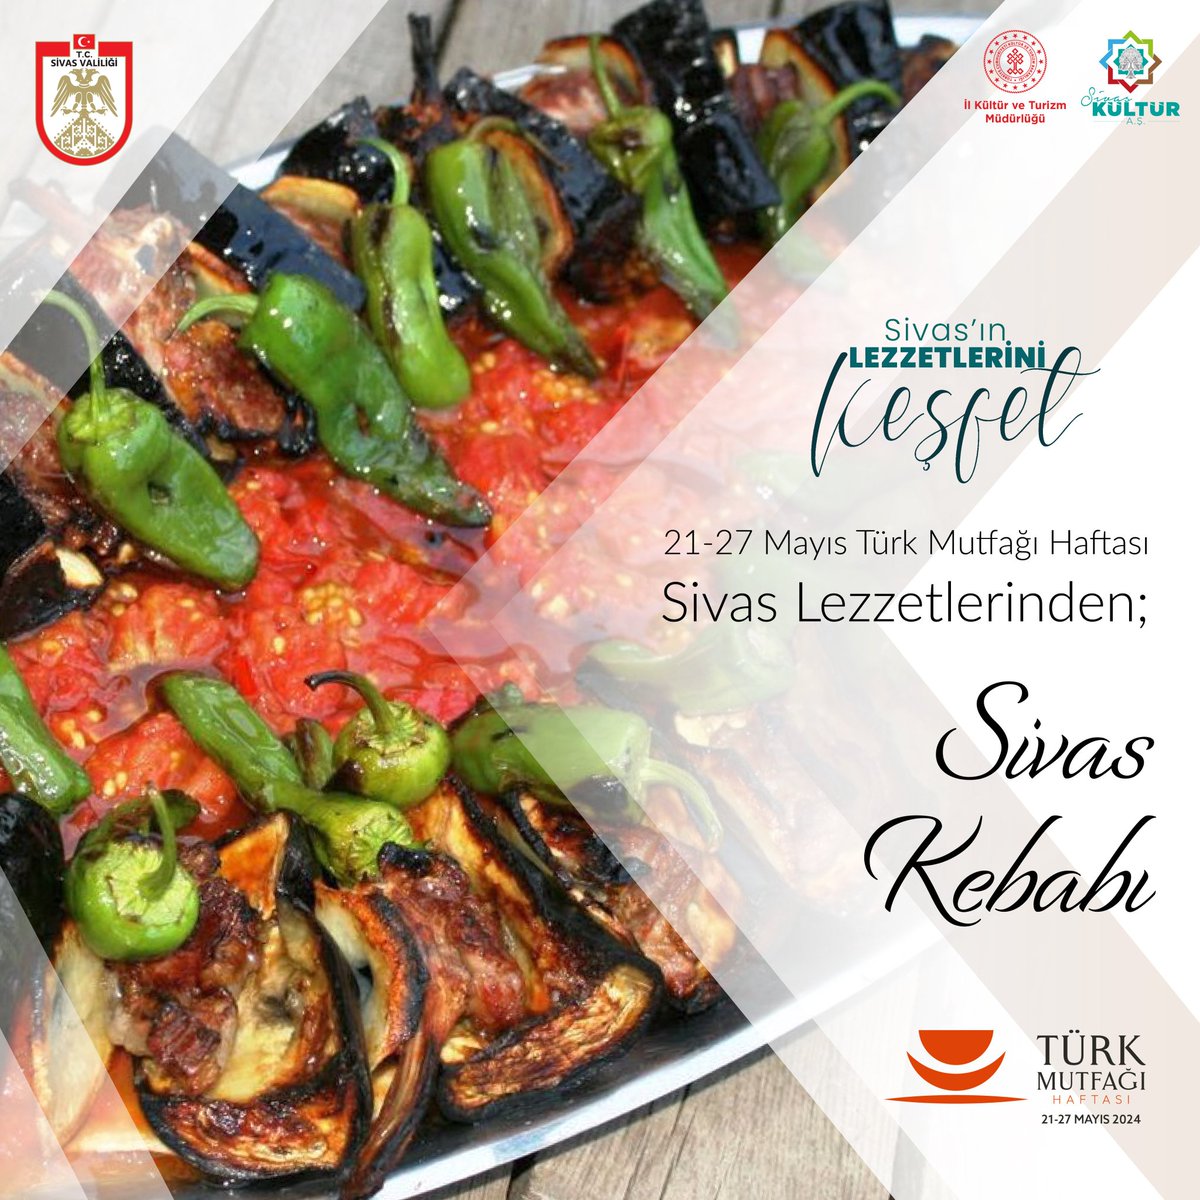 Sivas Valiliği, Tokat'ın meşhur bir restoranın Instagram hesabındaki Tokat Kebabı fotoğrafını alıp Sivas Kebabı yazarak paylaştı.